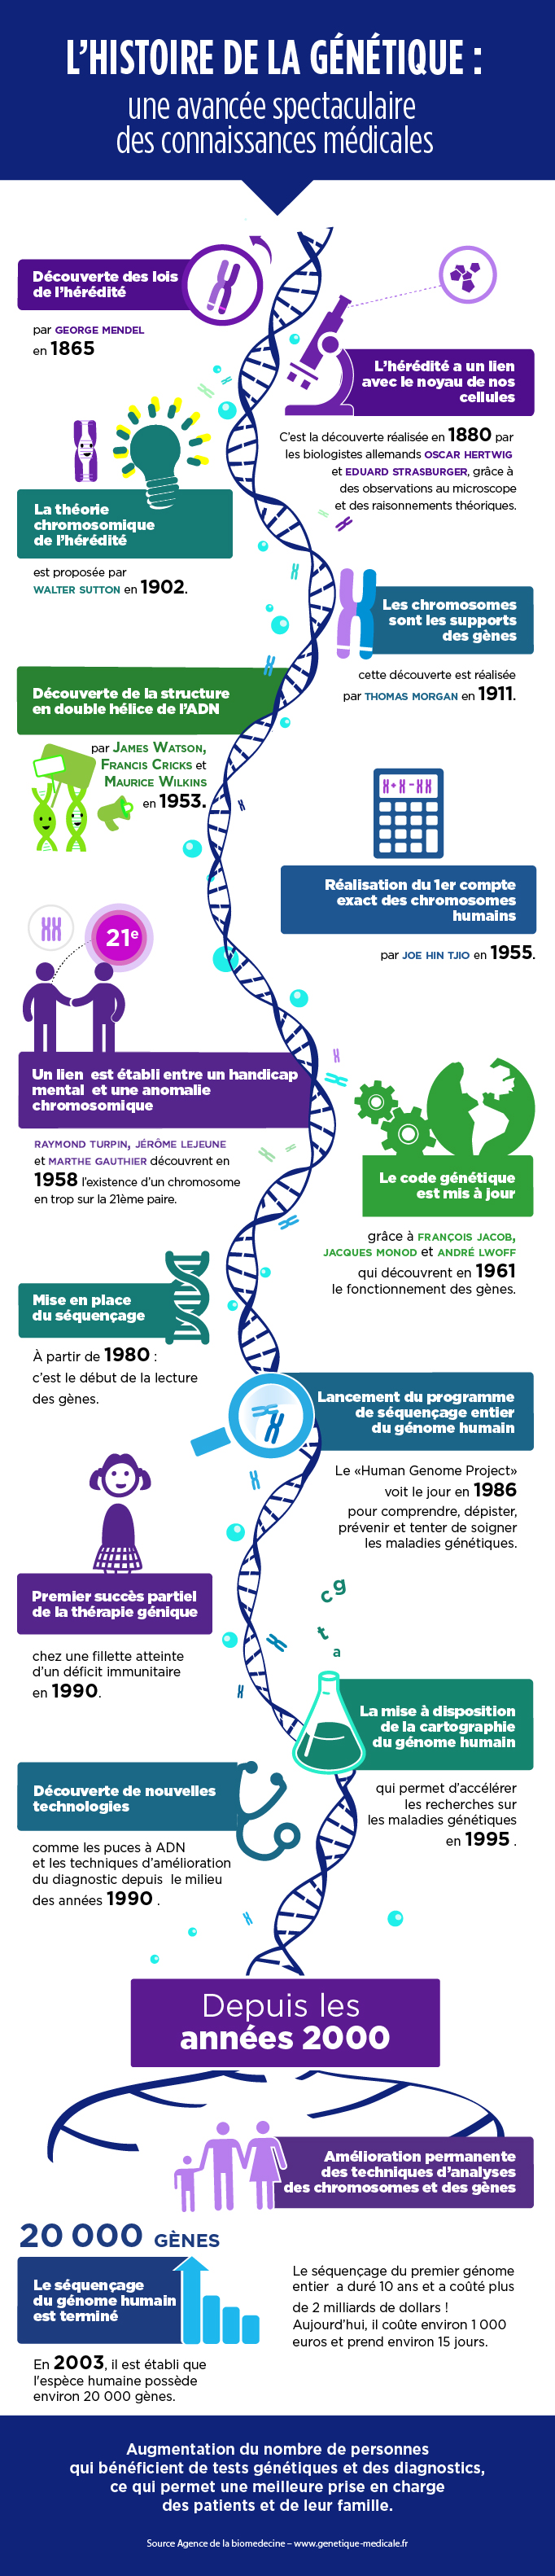 Histoire de la génétique